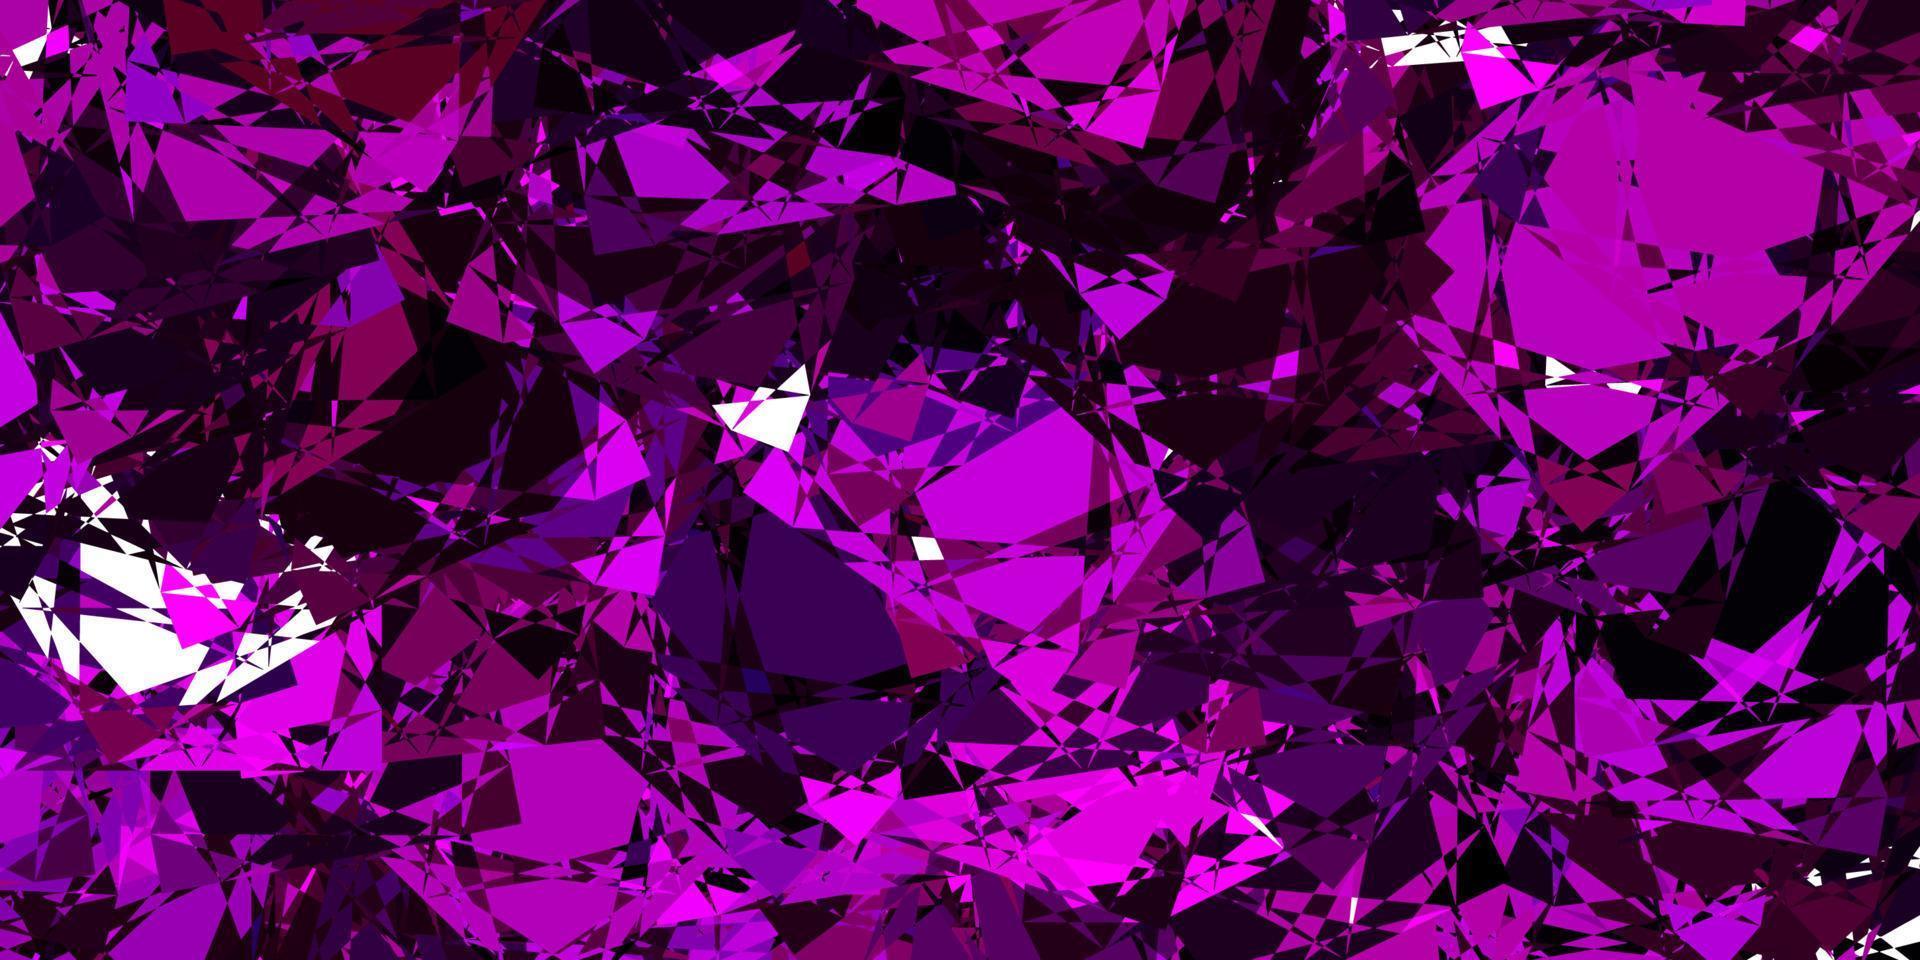 Fondo de vector rosa oscuro con triángulos.